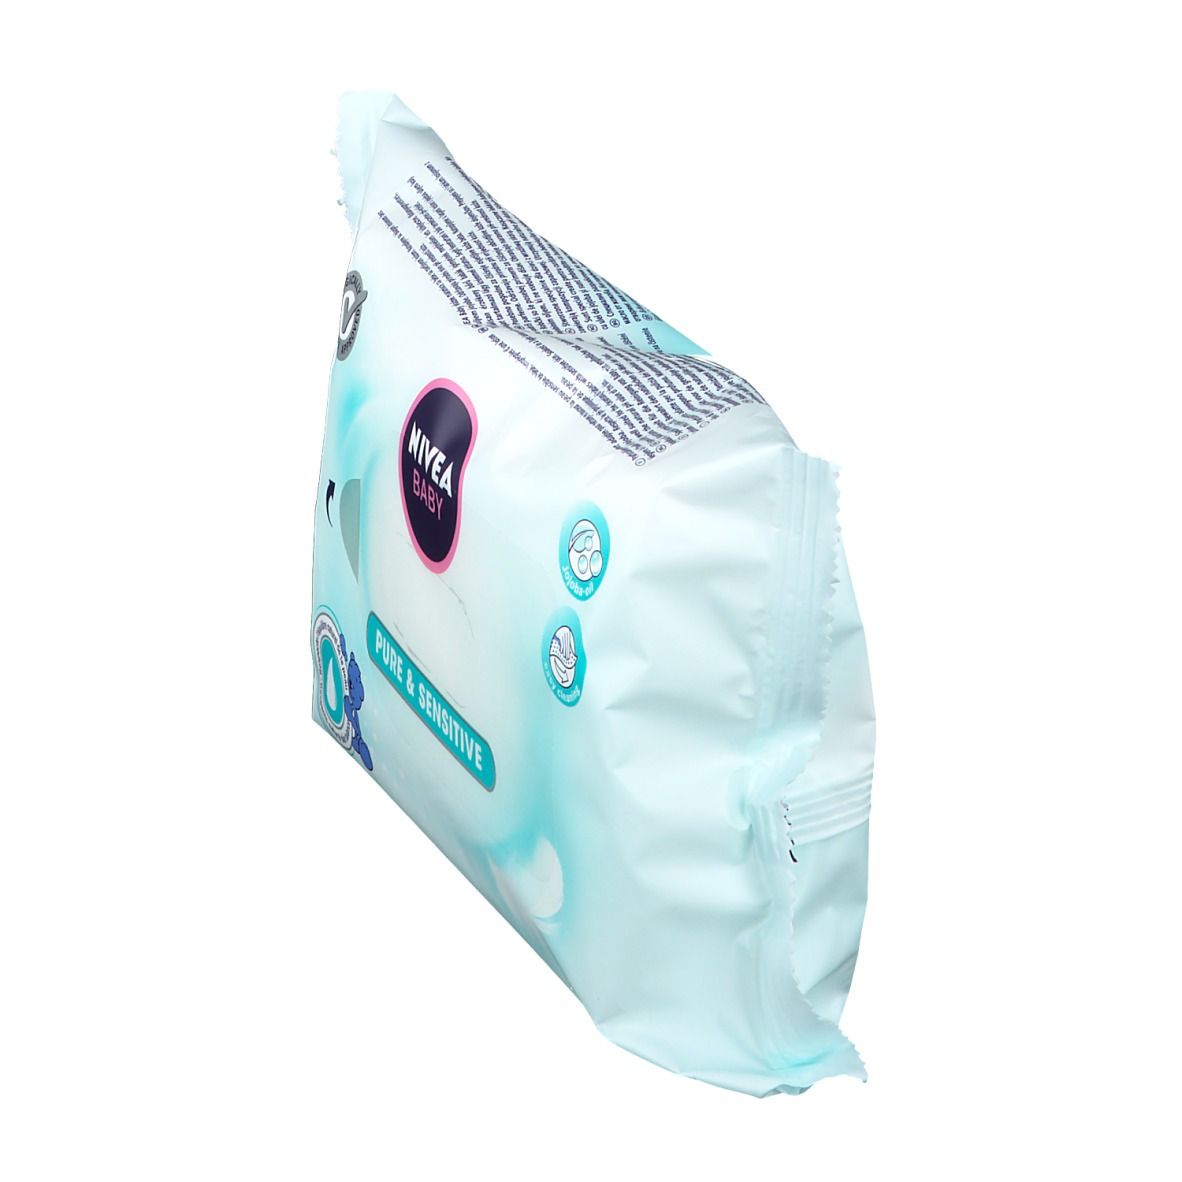 NIVEA® Pure & Sensitive Reinigungstücher